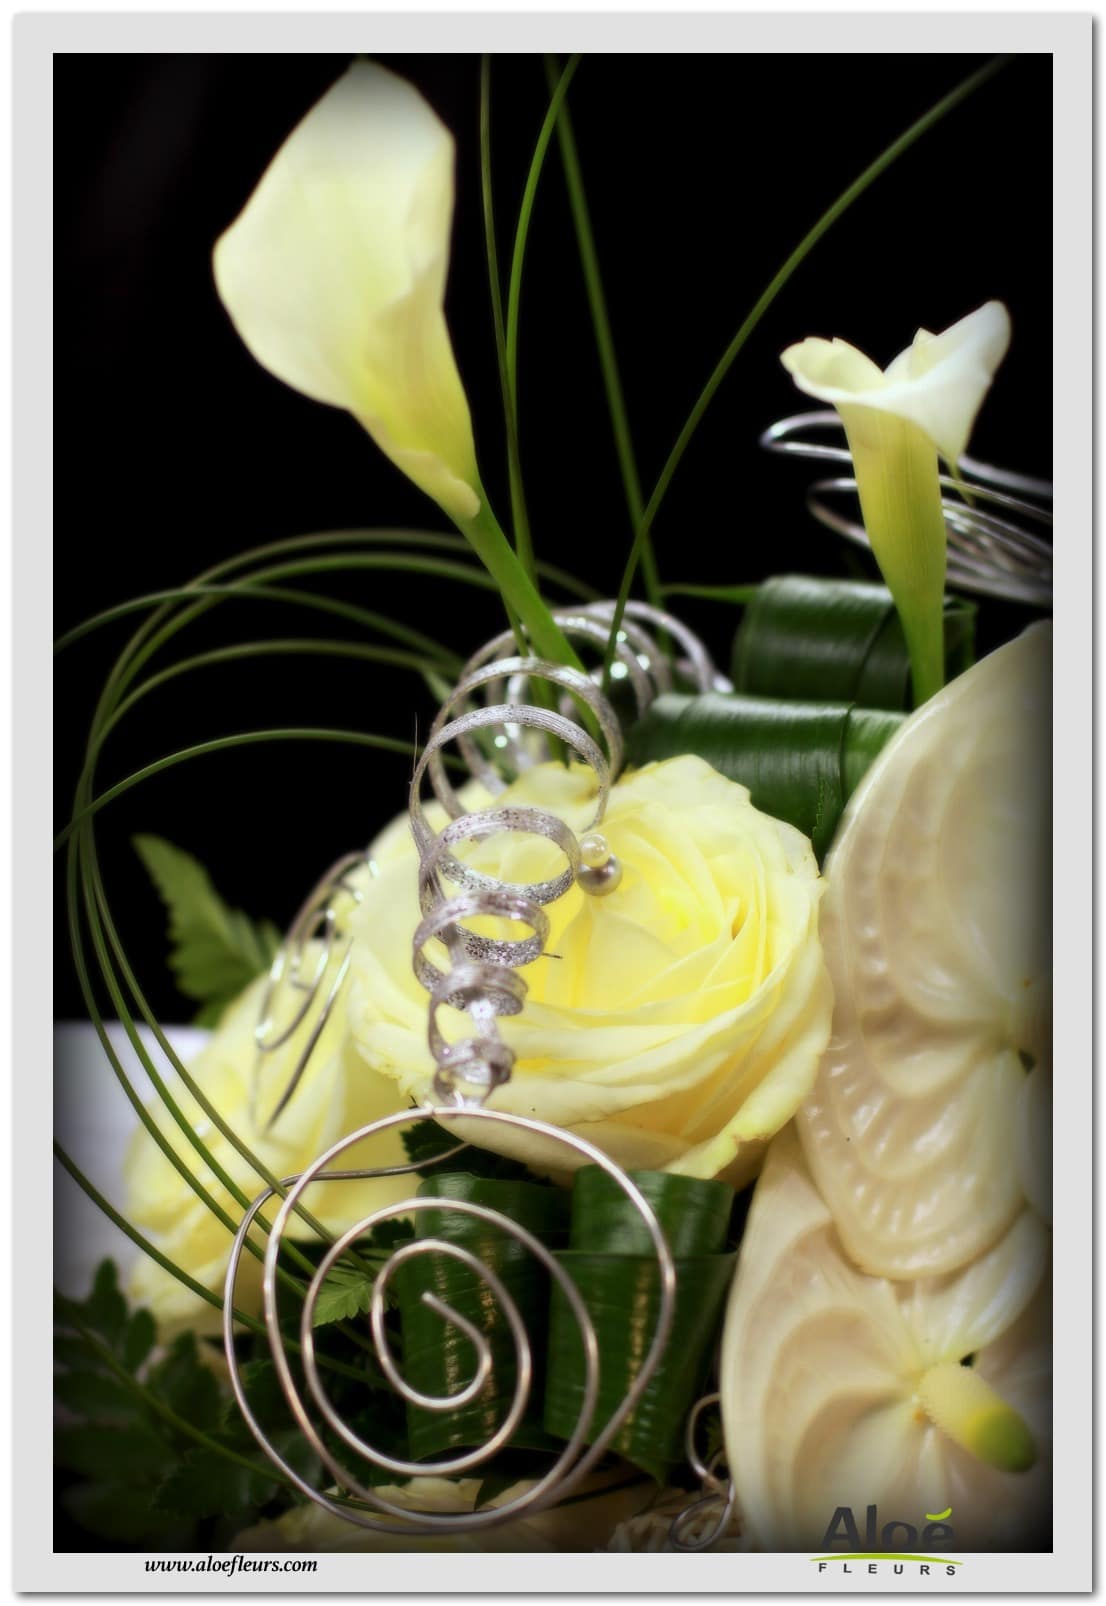 Tous les bouquets de mariée ont été conçus et réalisés par l'équipe d'Aloé Fleurs Forbach